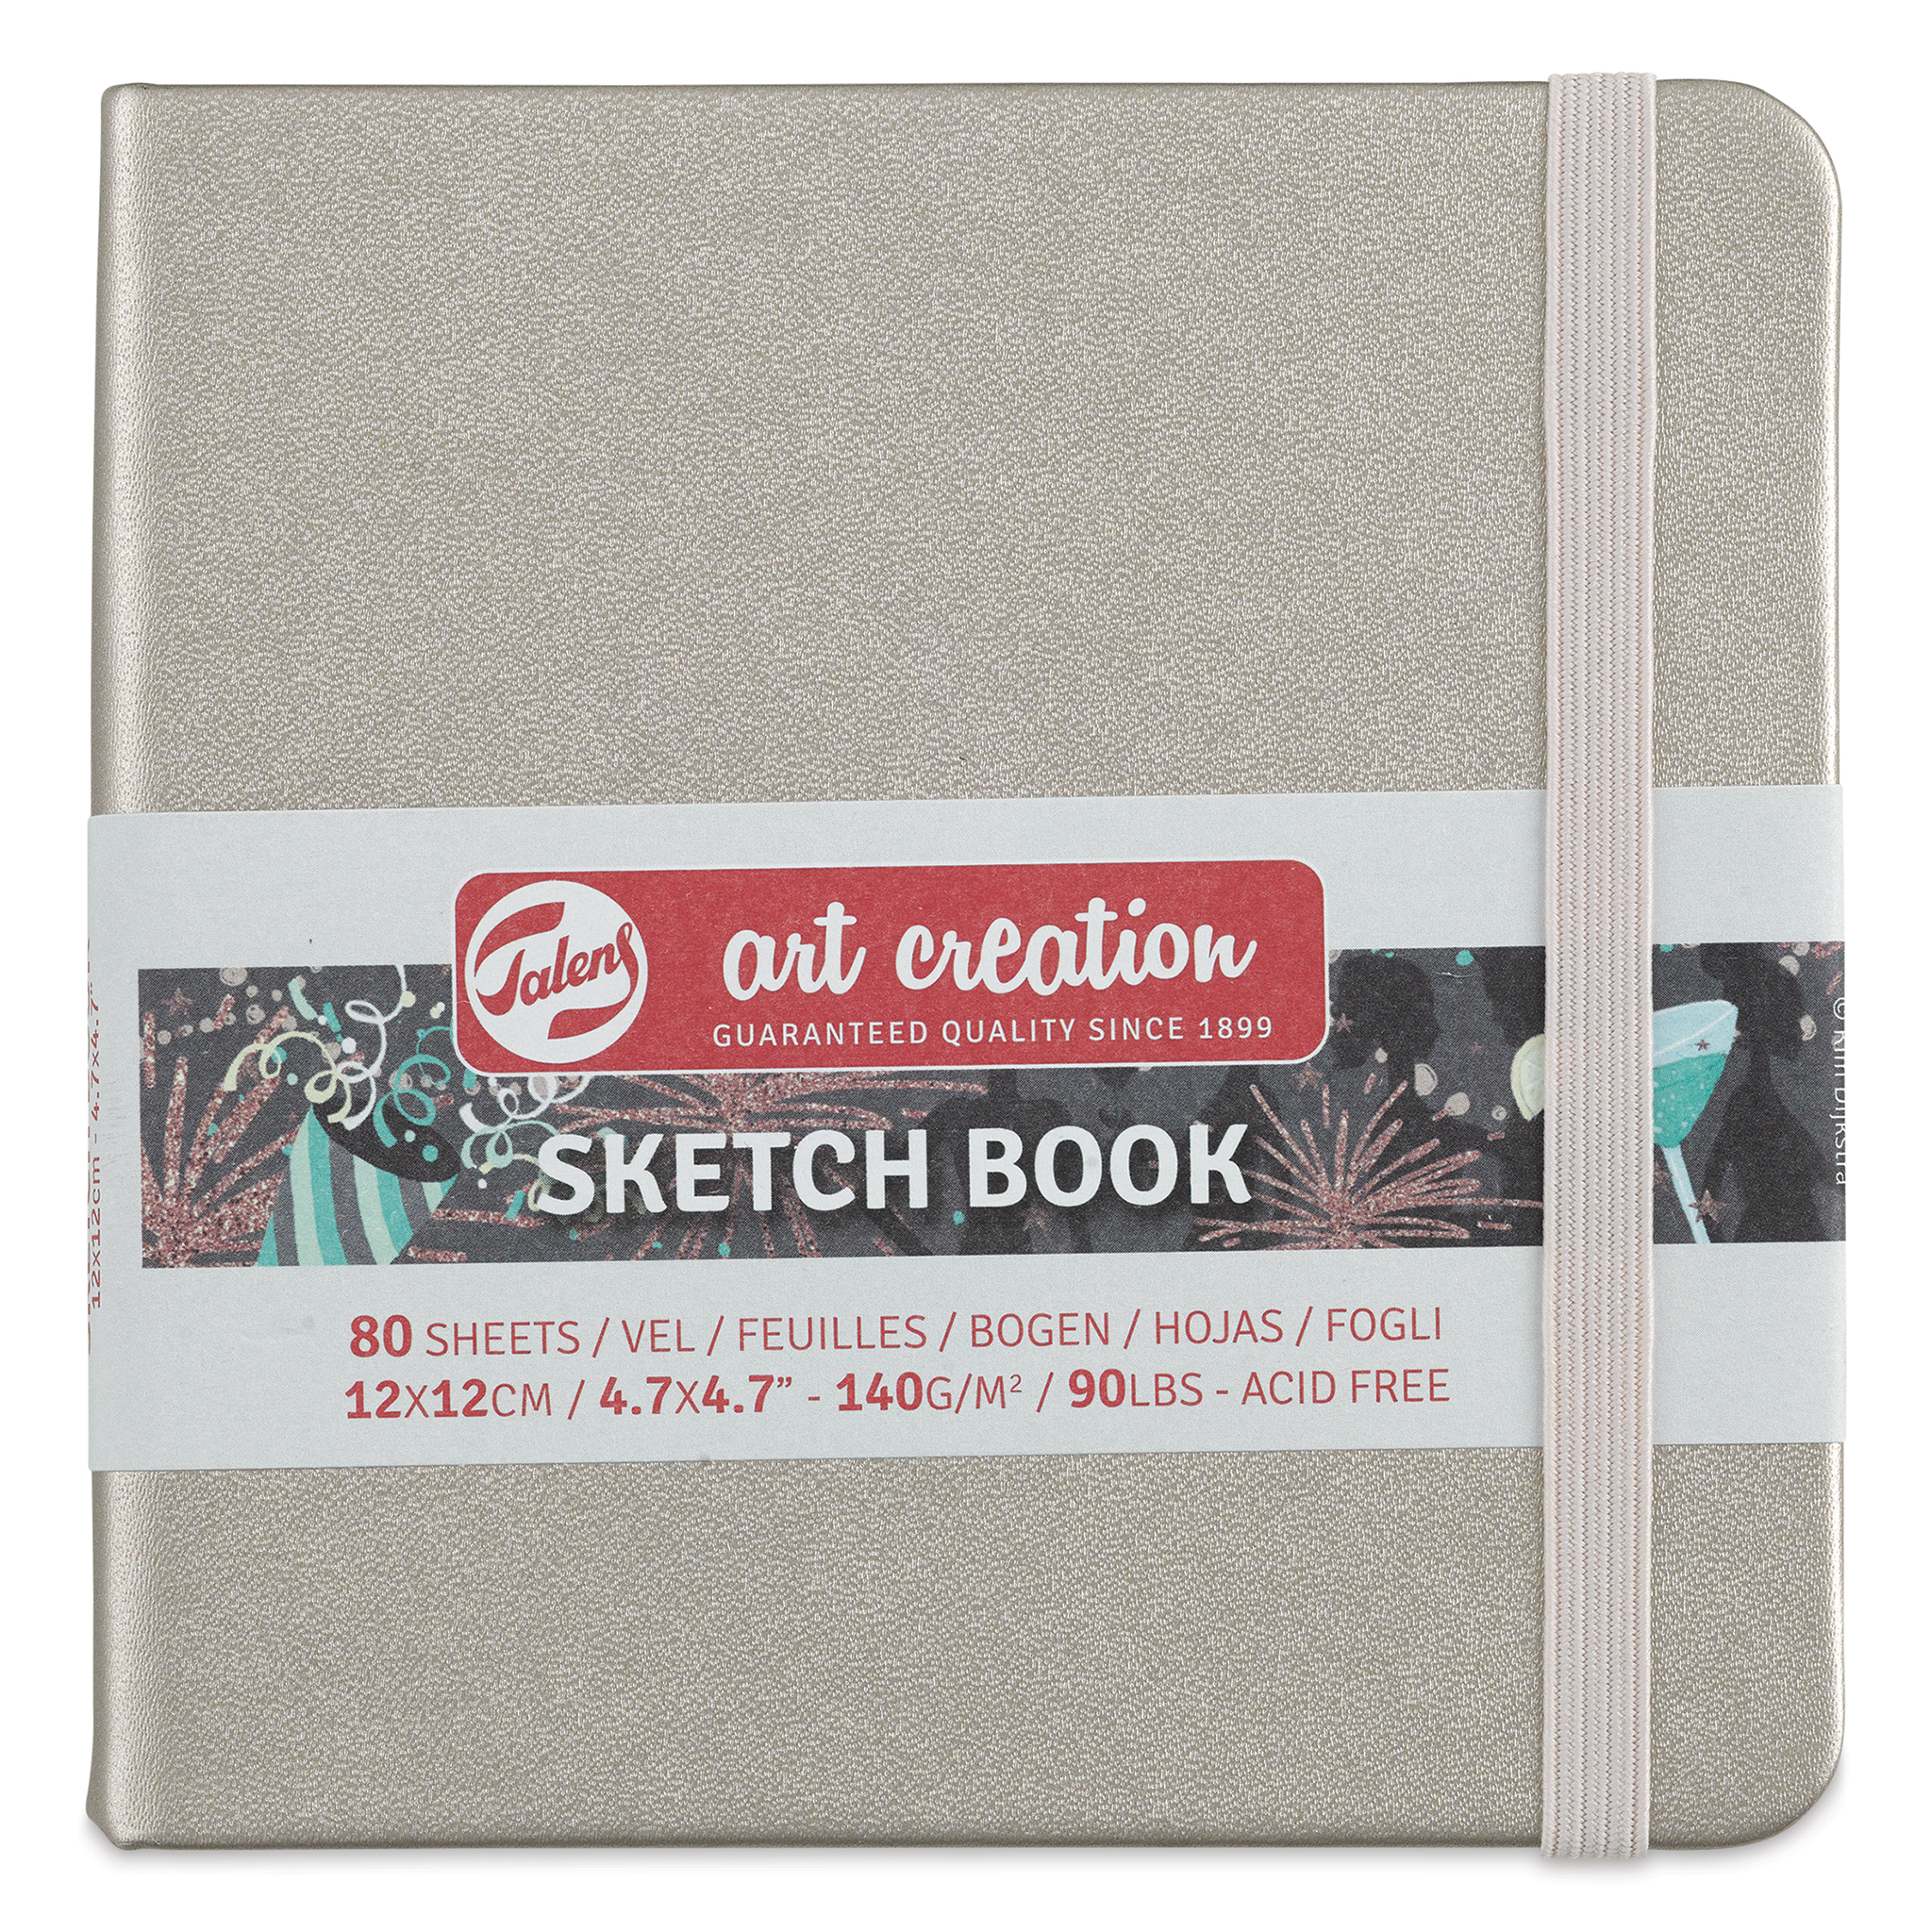 Talens Art Creations Sketchbook - Forest Green, 4.7 x 4.7, BLICK Art  Materials